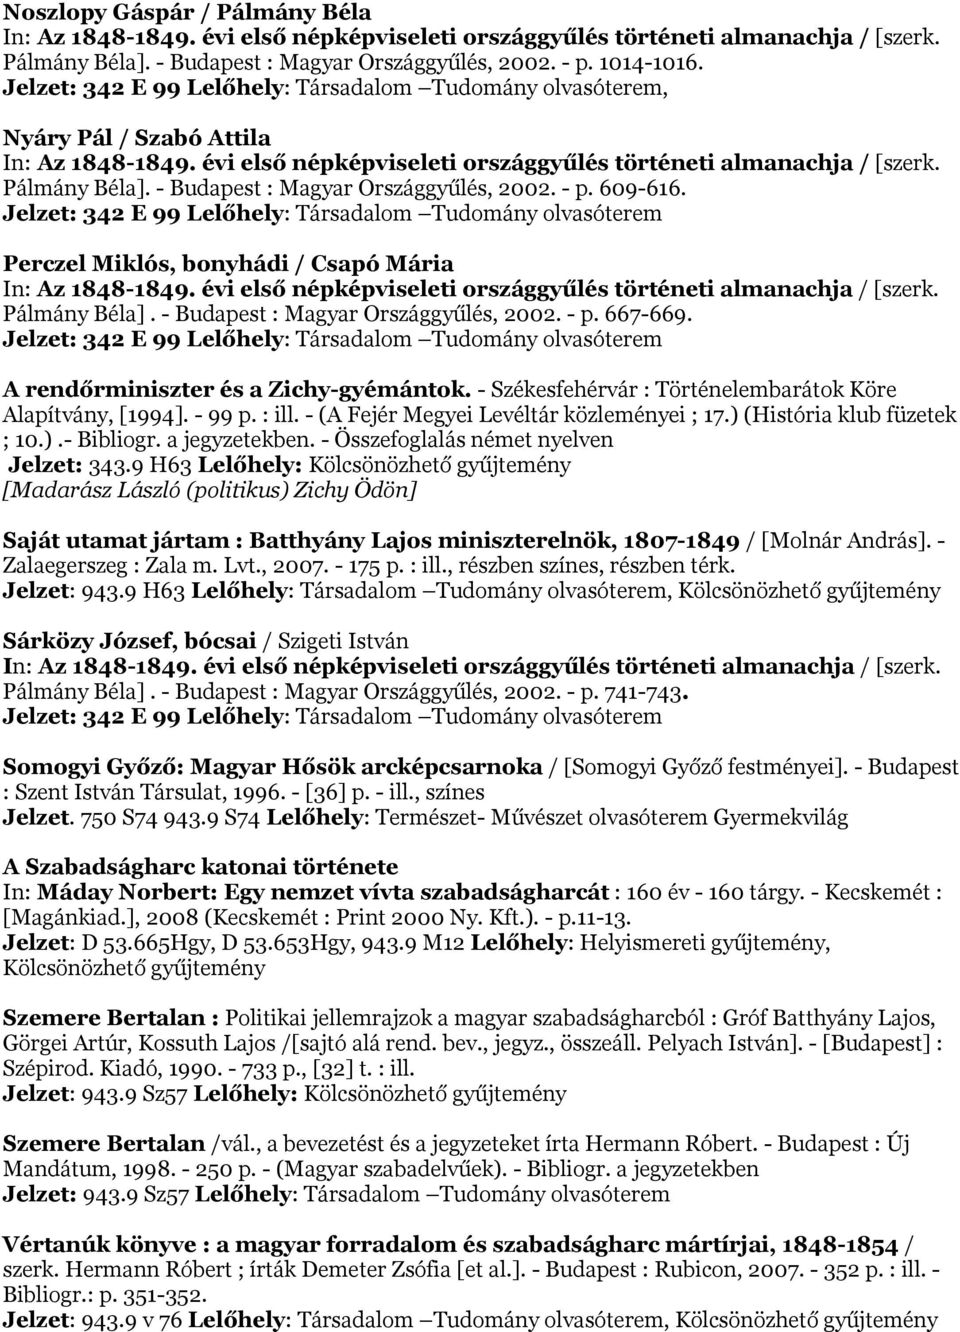 Jelzet: 342 E 99 Lelőhely: Társadalom Tudomány olvasóterem Perczel Miklós, bonyhádi / Csapó Mária Pálmány Béla]. - Budapest : Magyar Országgyűlés, 2002. - p. 667-669.